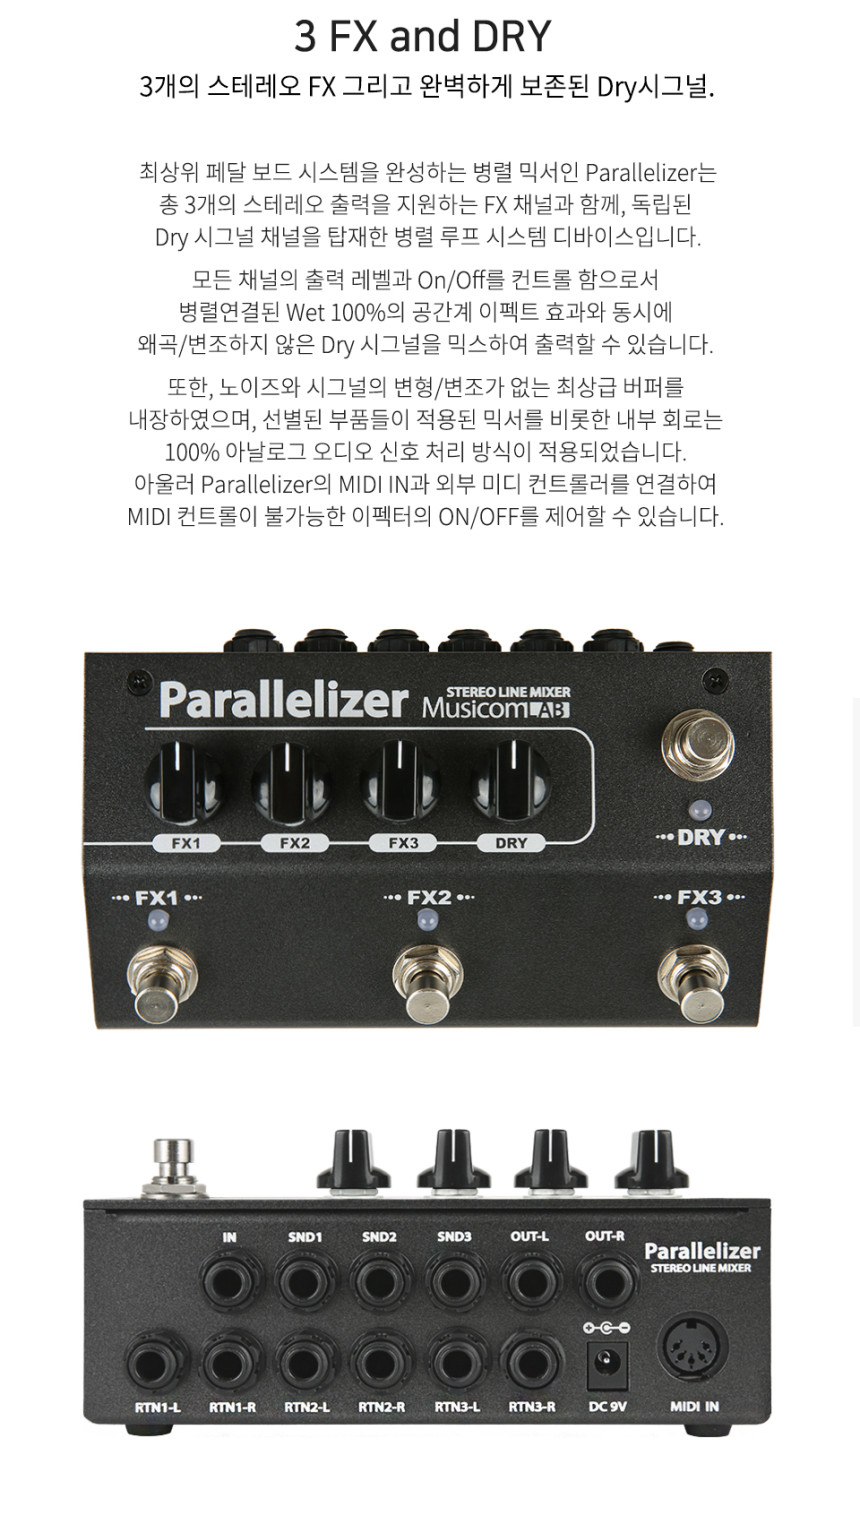 parallelizer_0003_144351.jpg